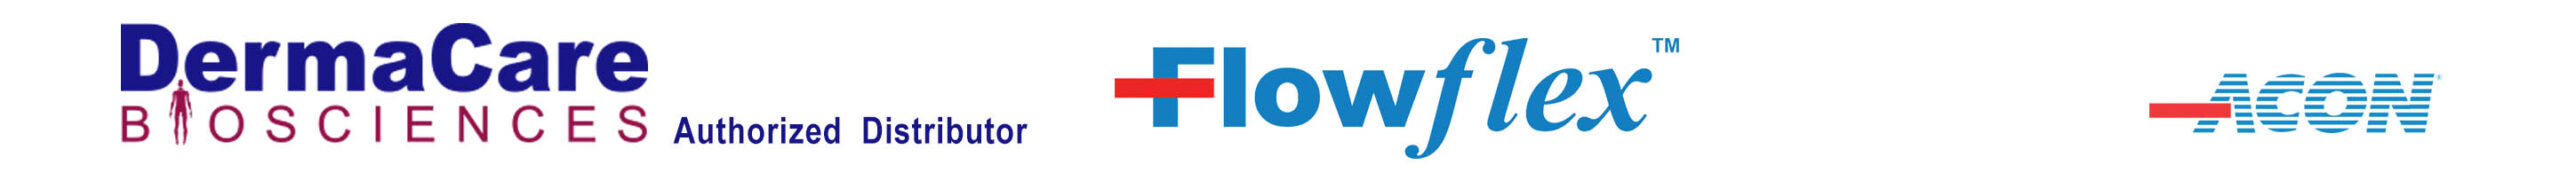 Flow Flex